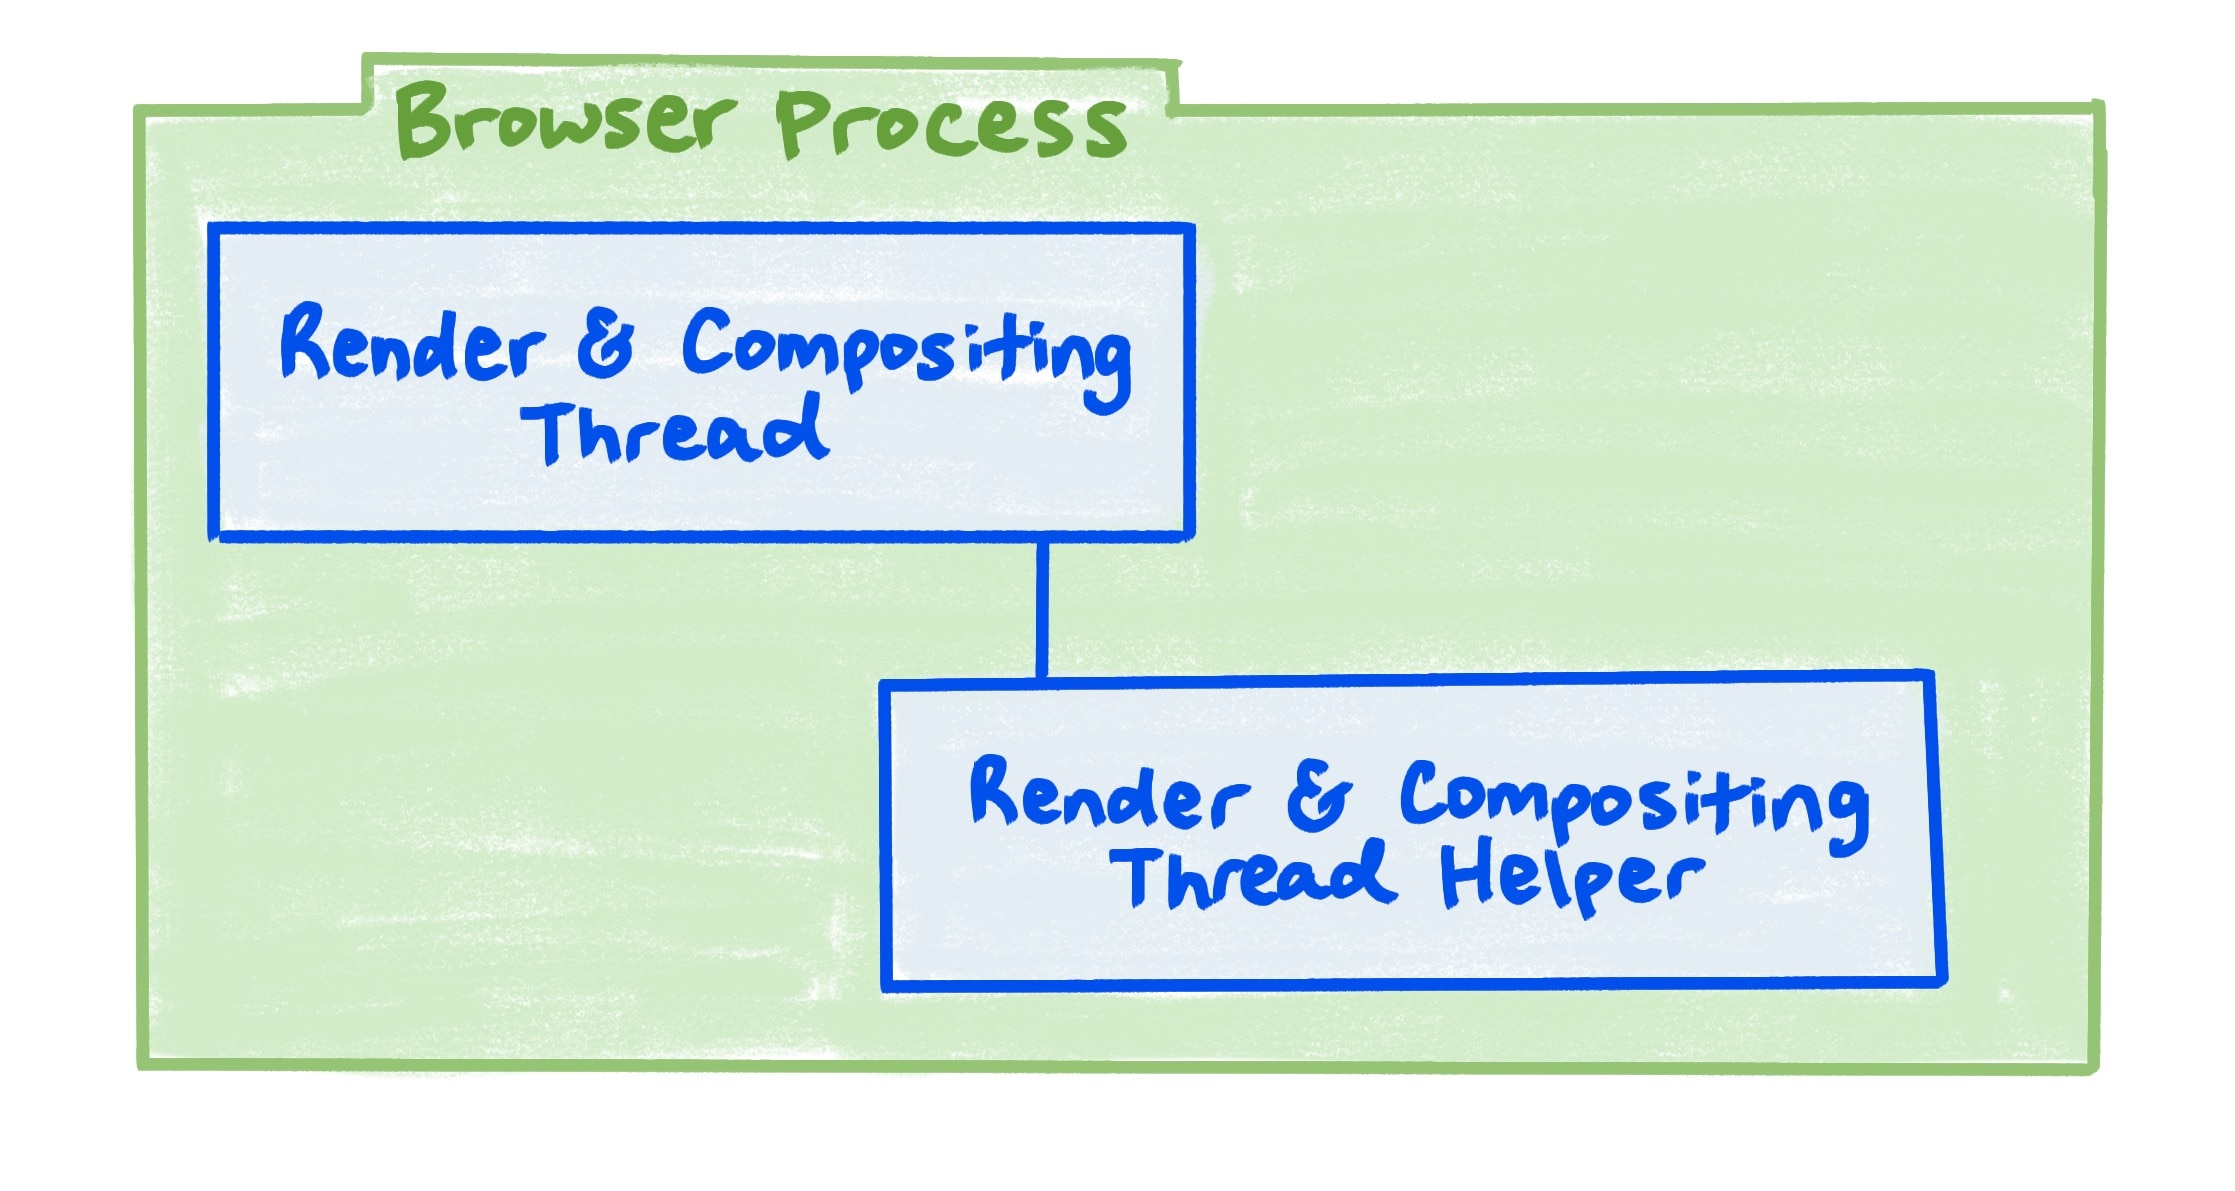 תרשים של תהליך דפדפן שבו מוצג הקשר בין עיבוד וחיבור ה-thread, לבין כלי העזר לרינדור והחיבור של שרשור.